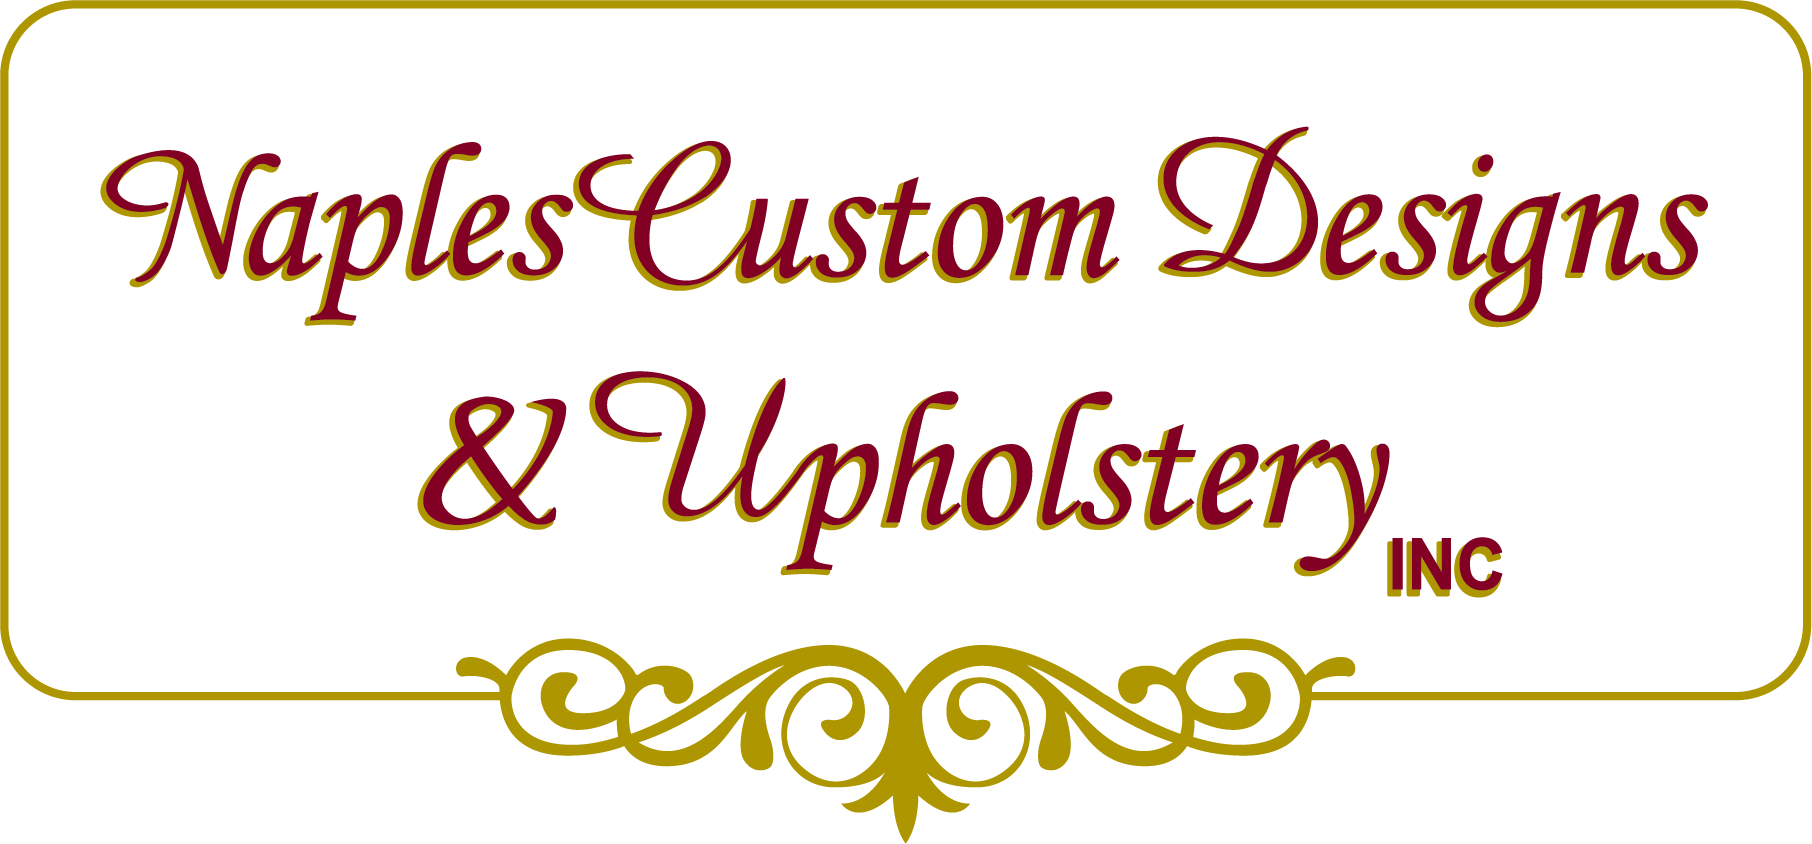 Naples Custom Designs & Upholstery